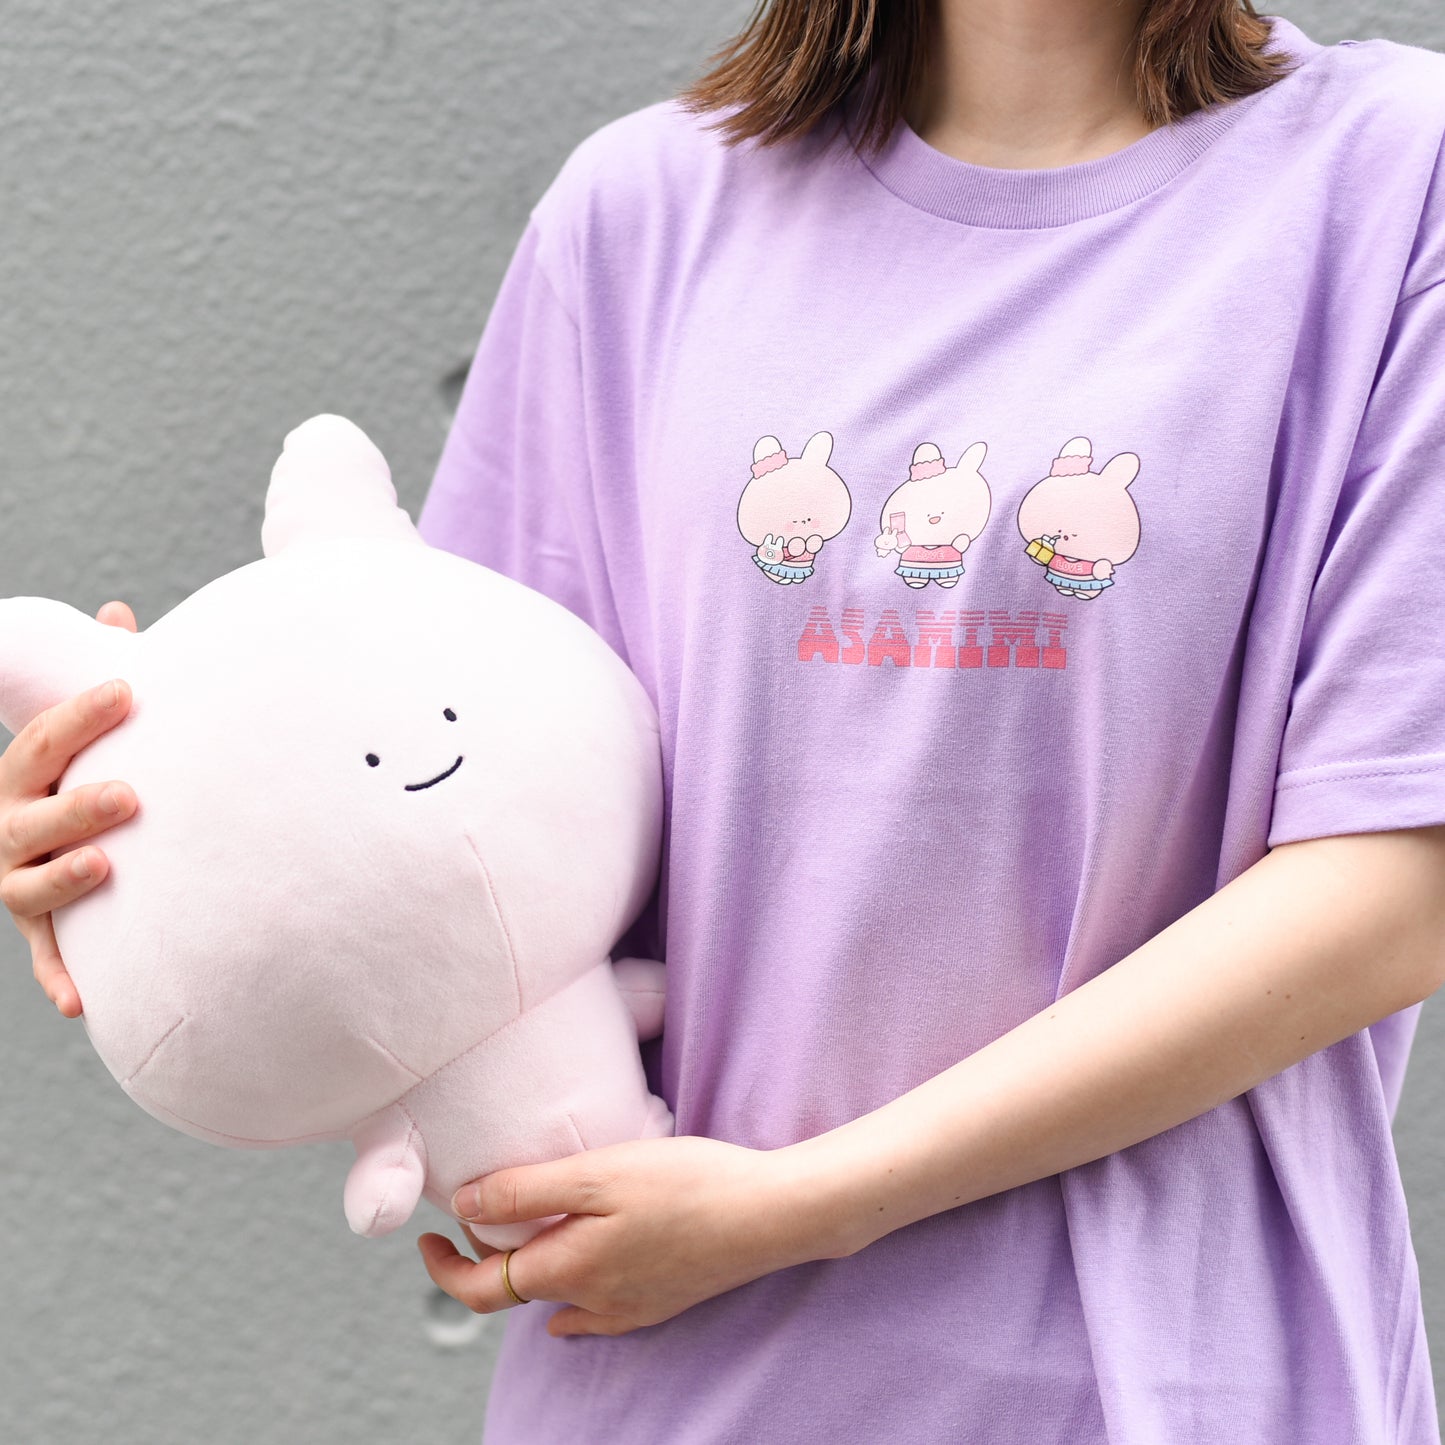 [Asamimi-chan] T-shirt imprimé à manches courtes (Mitsugo)